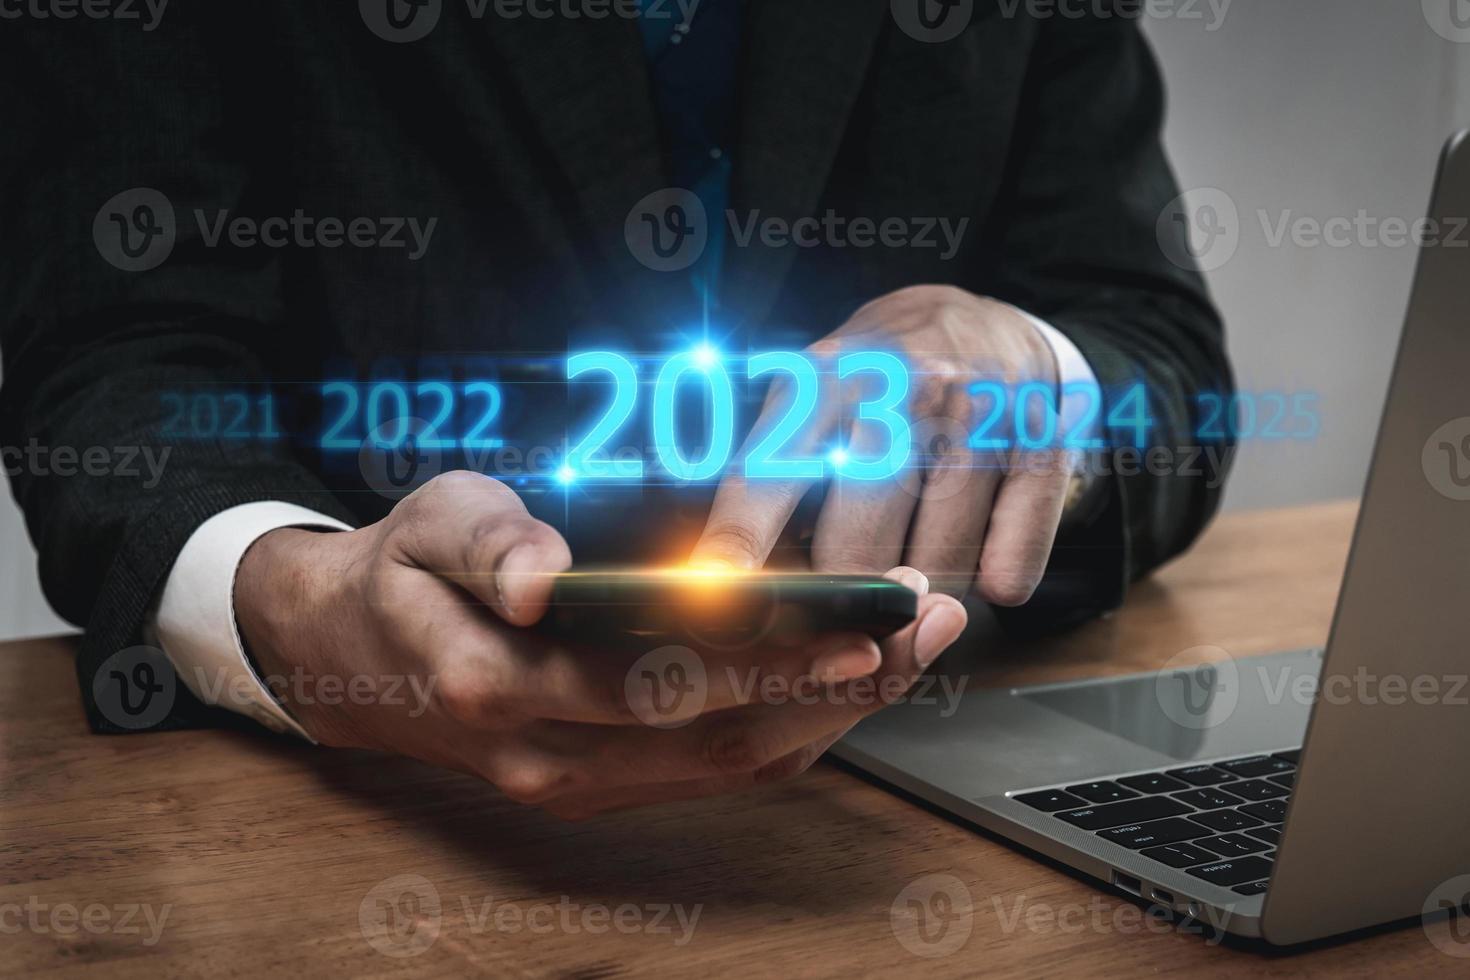 neiging van 2023. mensen bedrijf investeerder gebruik makend van mobiel telefoon met virtueel 2023 jaar diagram, bedrijf tendens, verandering van 2022 naar 2023, strategie, investering, bedrijf planning en gelukkig nieuw jaar concept foto